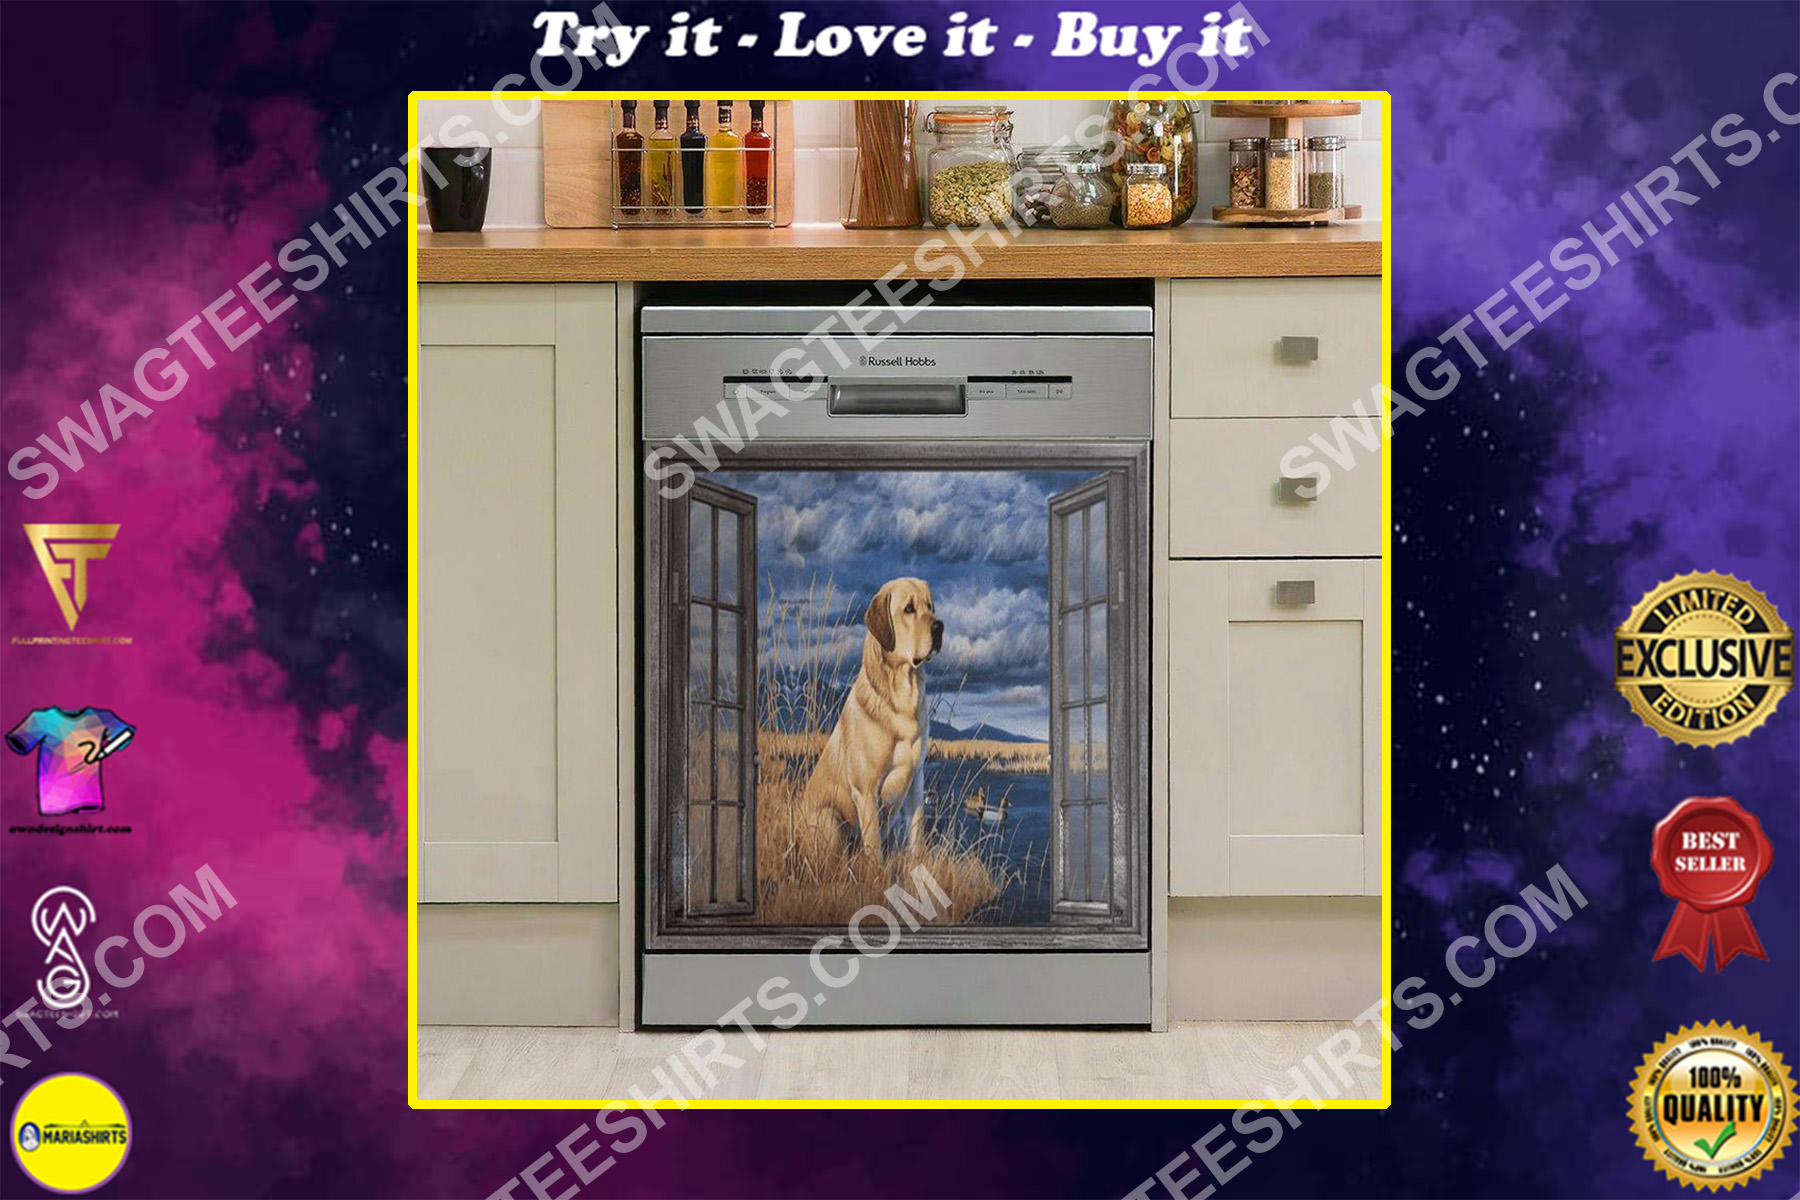 labrador lover kitchen decorative dishwasher magnet cover